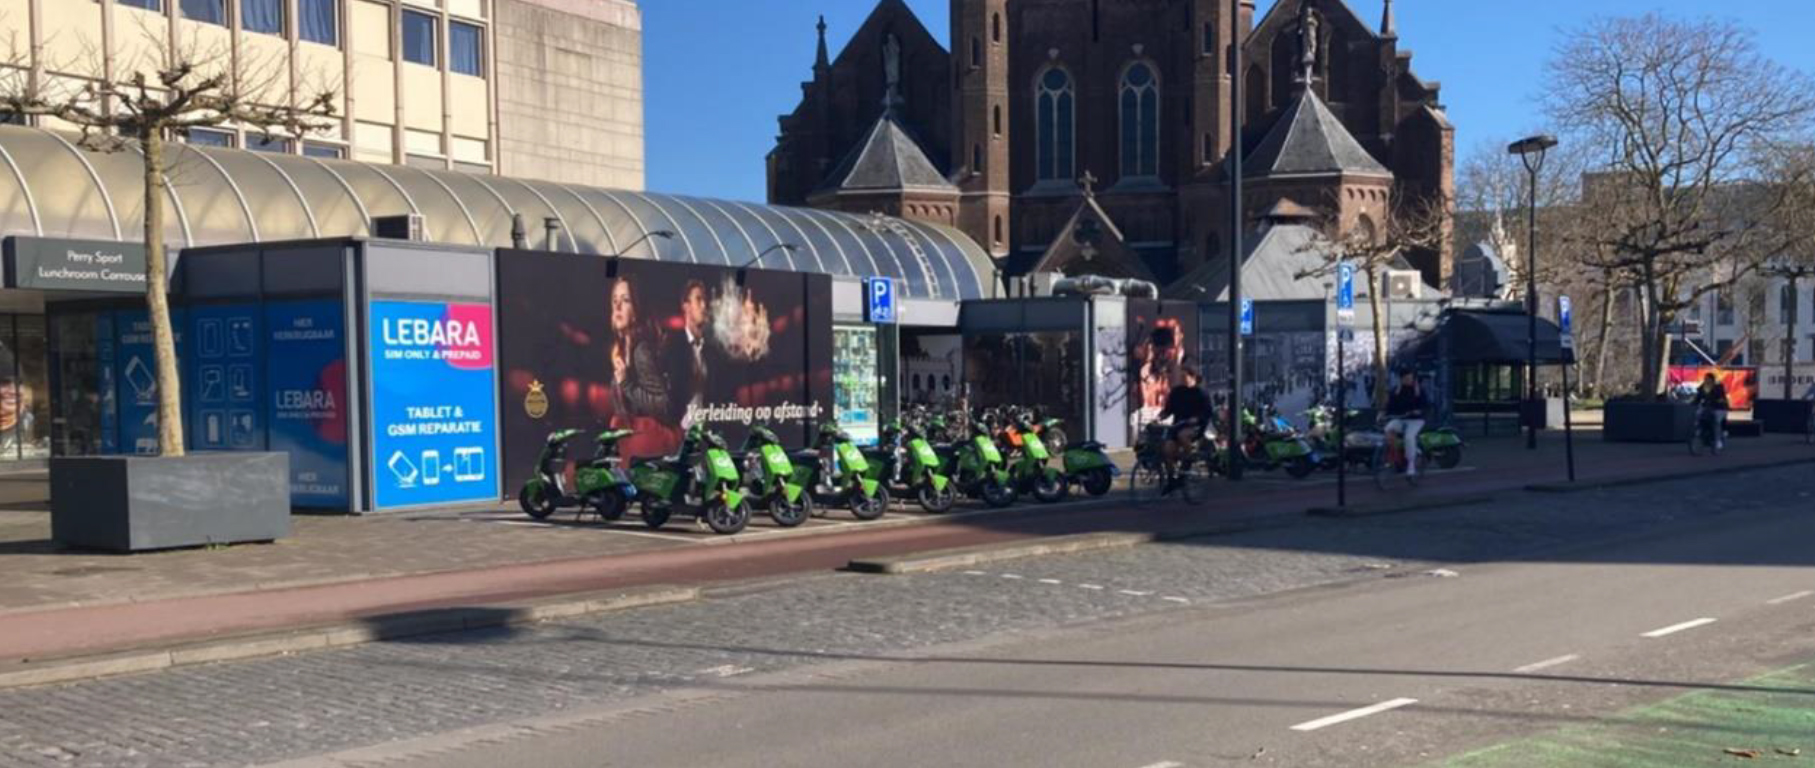 ‘Tilburg maakt stap in beleid rond deelmobiliteit elektrische tweewielers’